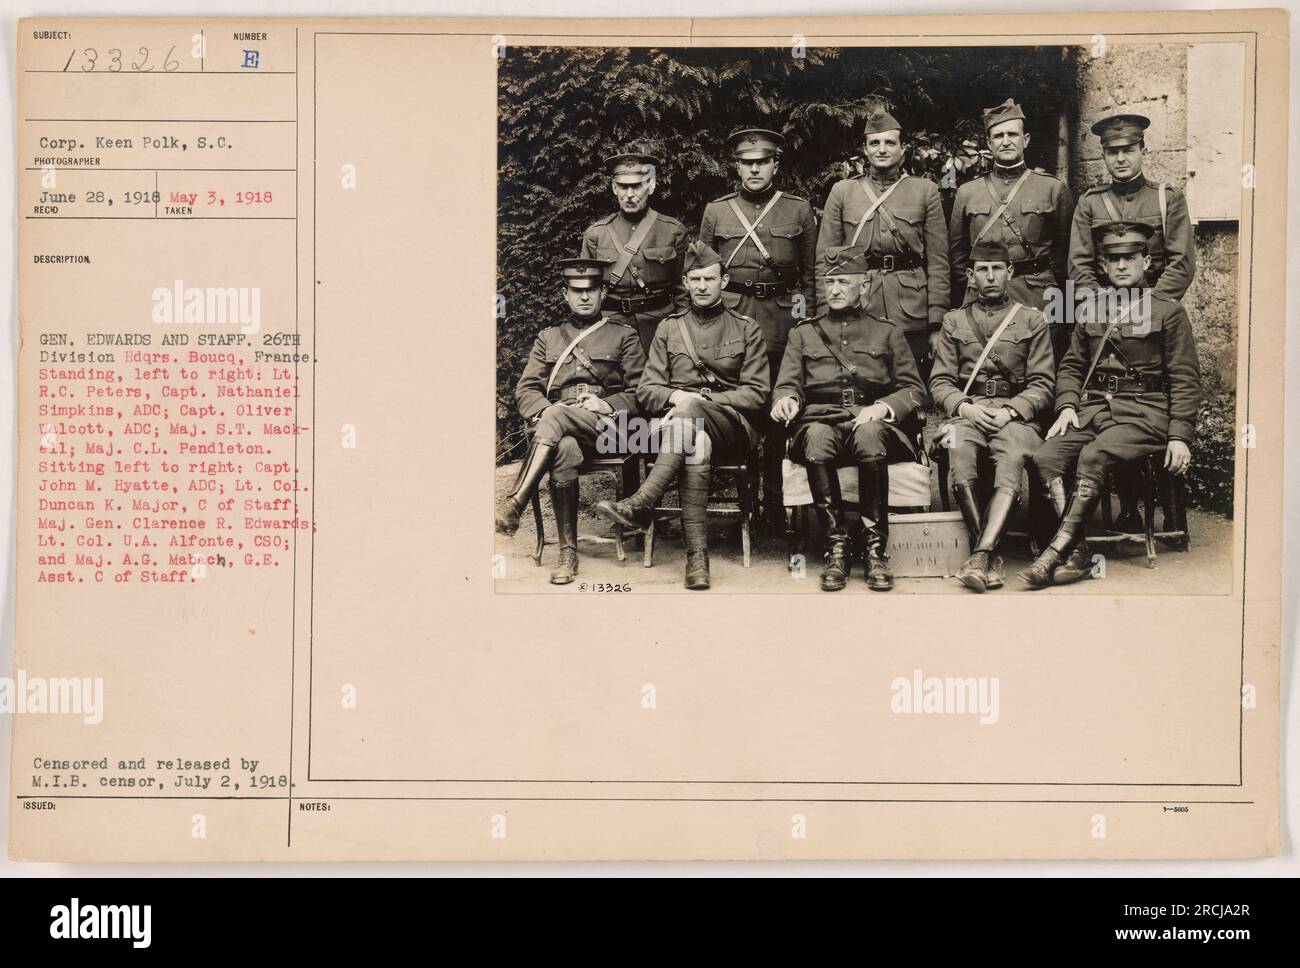 General de Div. Clarence R. Edwards y su personal de la sede de la 26ª División en Boucq, Francia. En la foto (de pie, de izquierda a derecha): TLT. R.C. Peters, Capitán Nathaniel Simpkins, Capitán Oliver Walcott, Mayor S.T. Mackell, Mayor C.L. Pendleton. Sentado (de izquierda a derecha): Capitán John M. Hyatte, Teniente Cnel. Duncan K. Major, Gral. de Div. Clarence R. Edwards, Teniente Cnel. U.A. Alfonte, y Mag. A.G. Mabach. Censurado y liberado por M.I.B., 2 de julio de 1918. Foto de stock